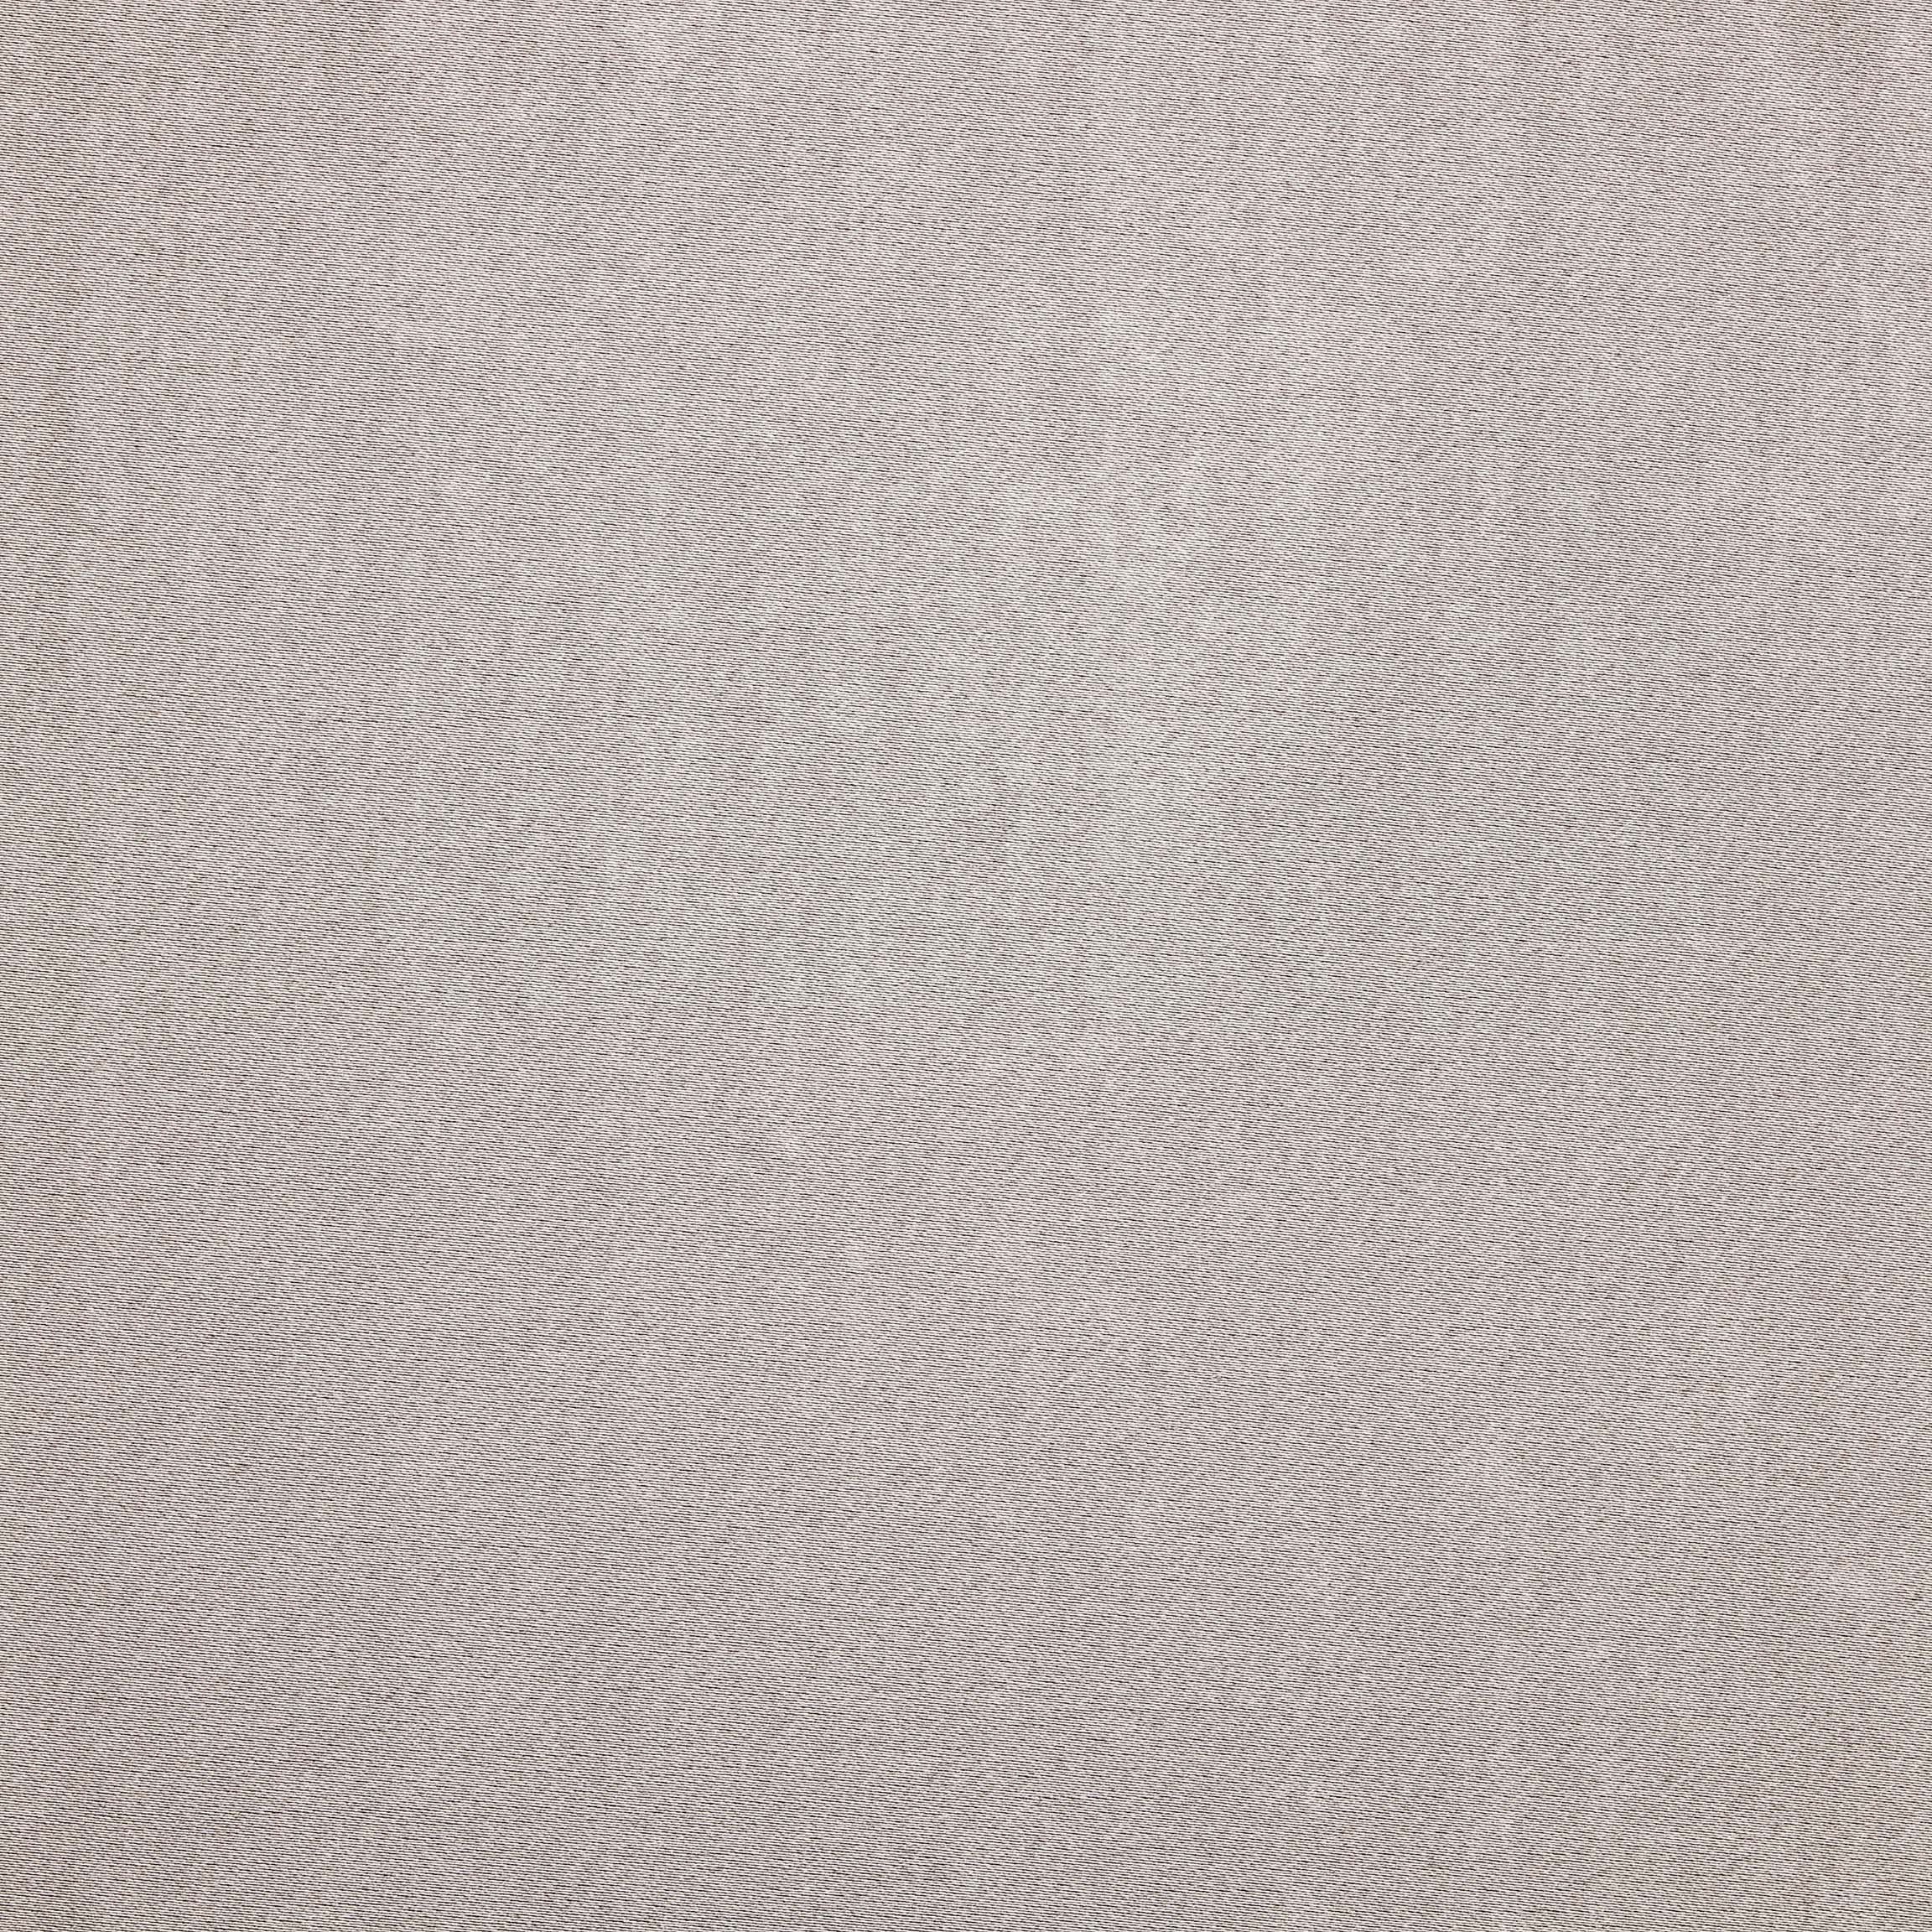  Портьерная ткань MONTREAL FUMA, ширина 280 см  - Фото